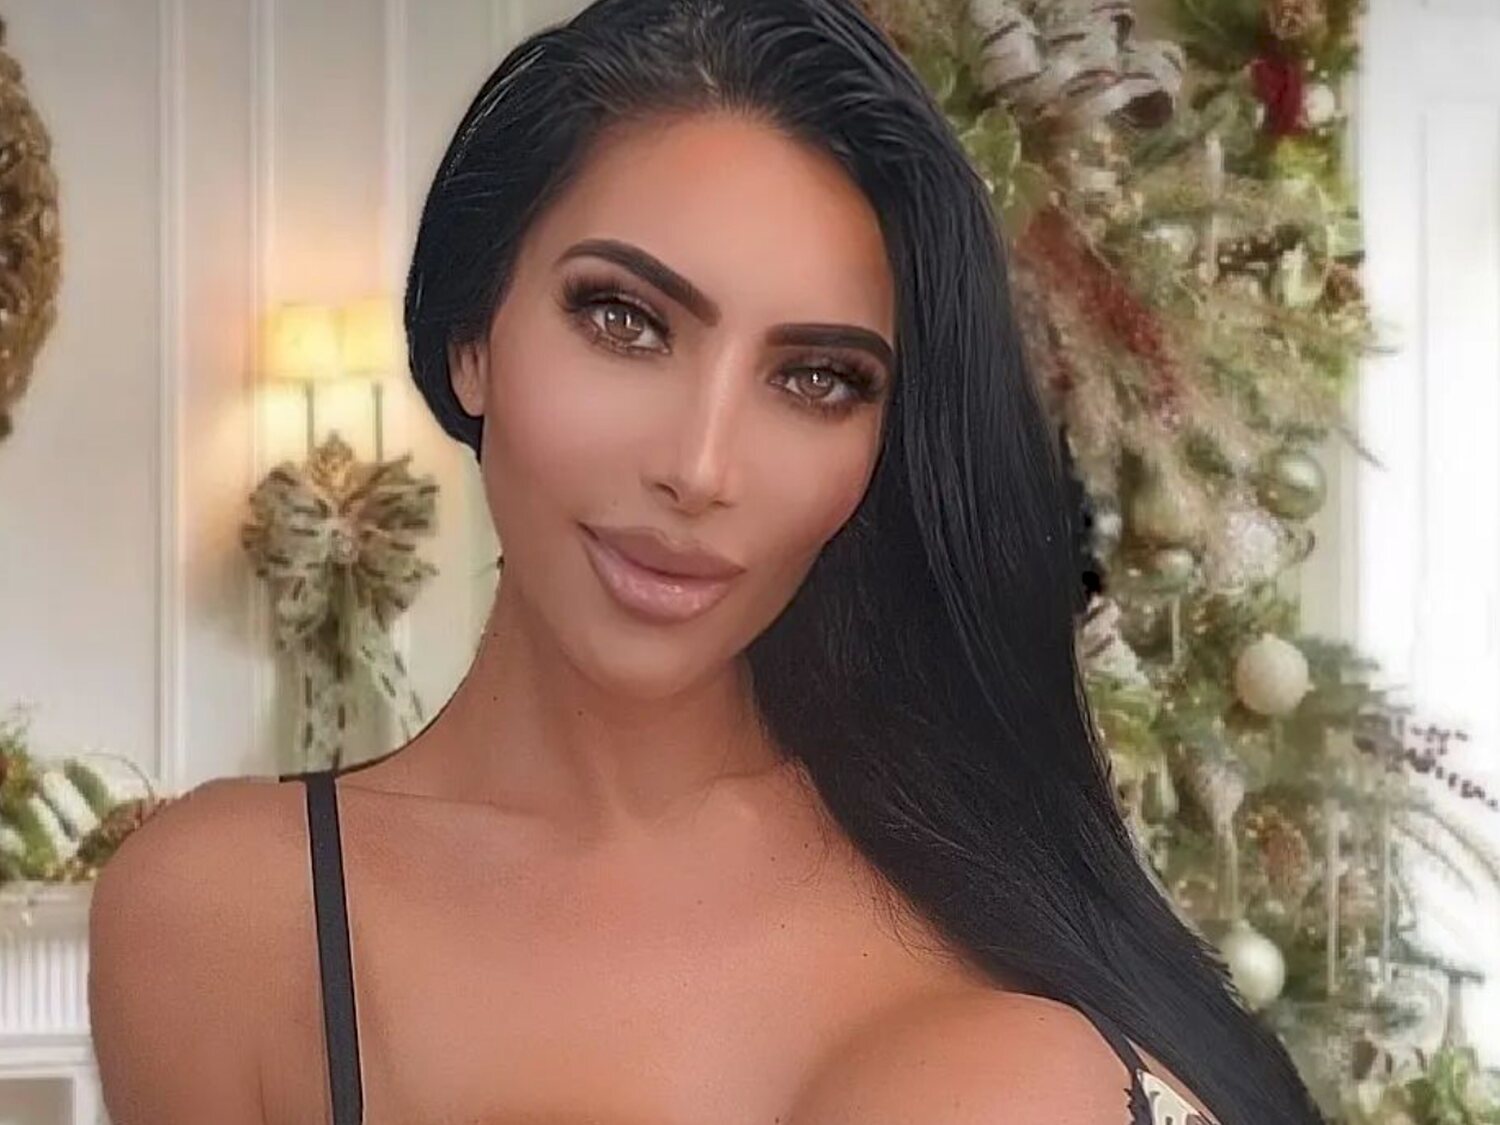 Muere Christina Ashten, la doble de Kim Kardashian, a los 34 años tras someterse a una operación estética